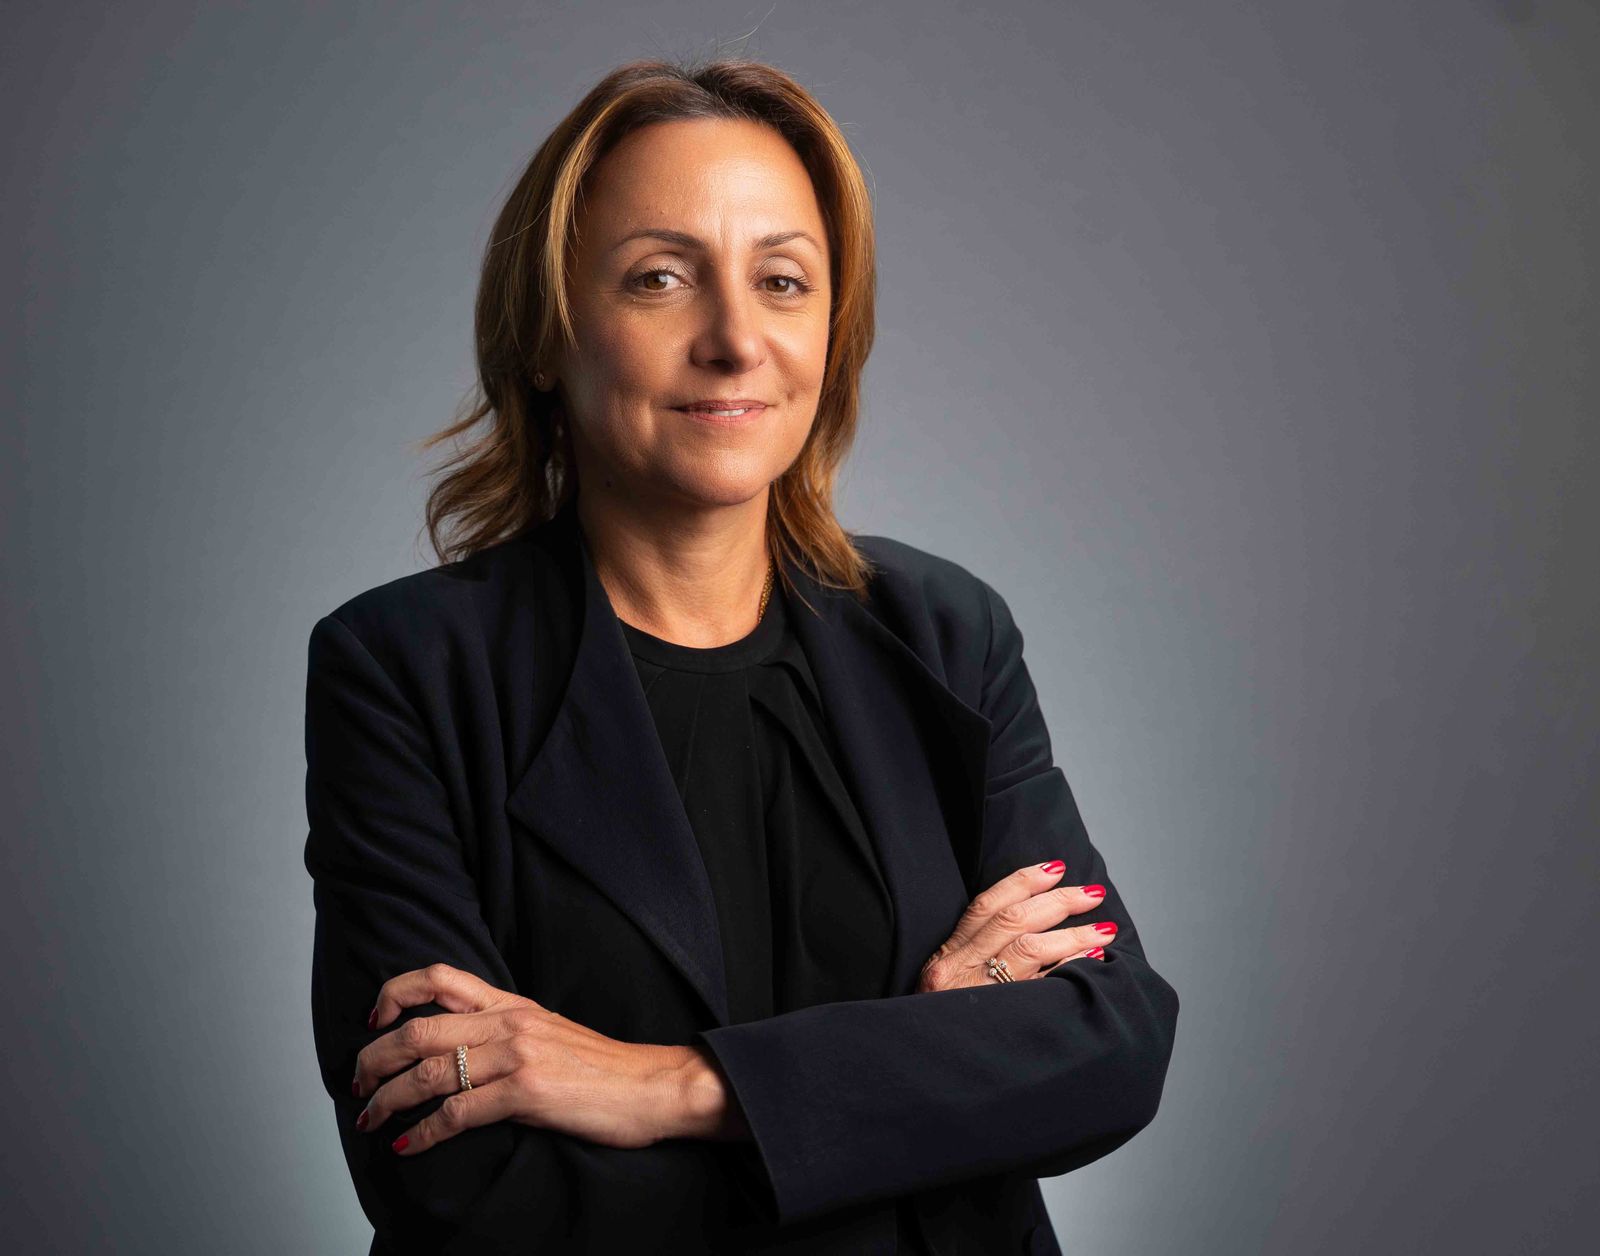 ليلى سرحان، المدير الإقليمي ونائب رئيس مجلس الإدارة لقيادة أعمال شركة فيزا